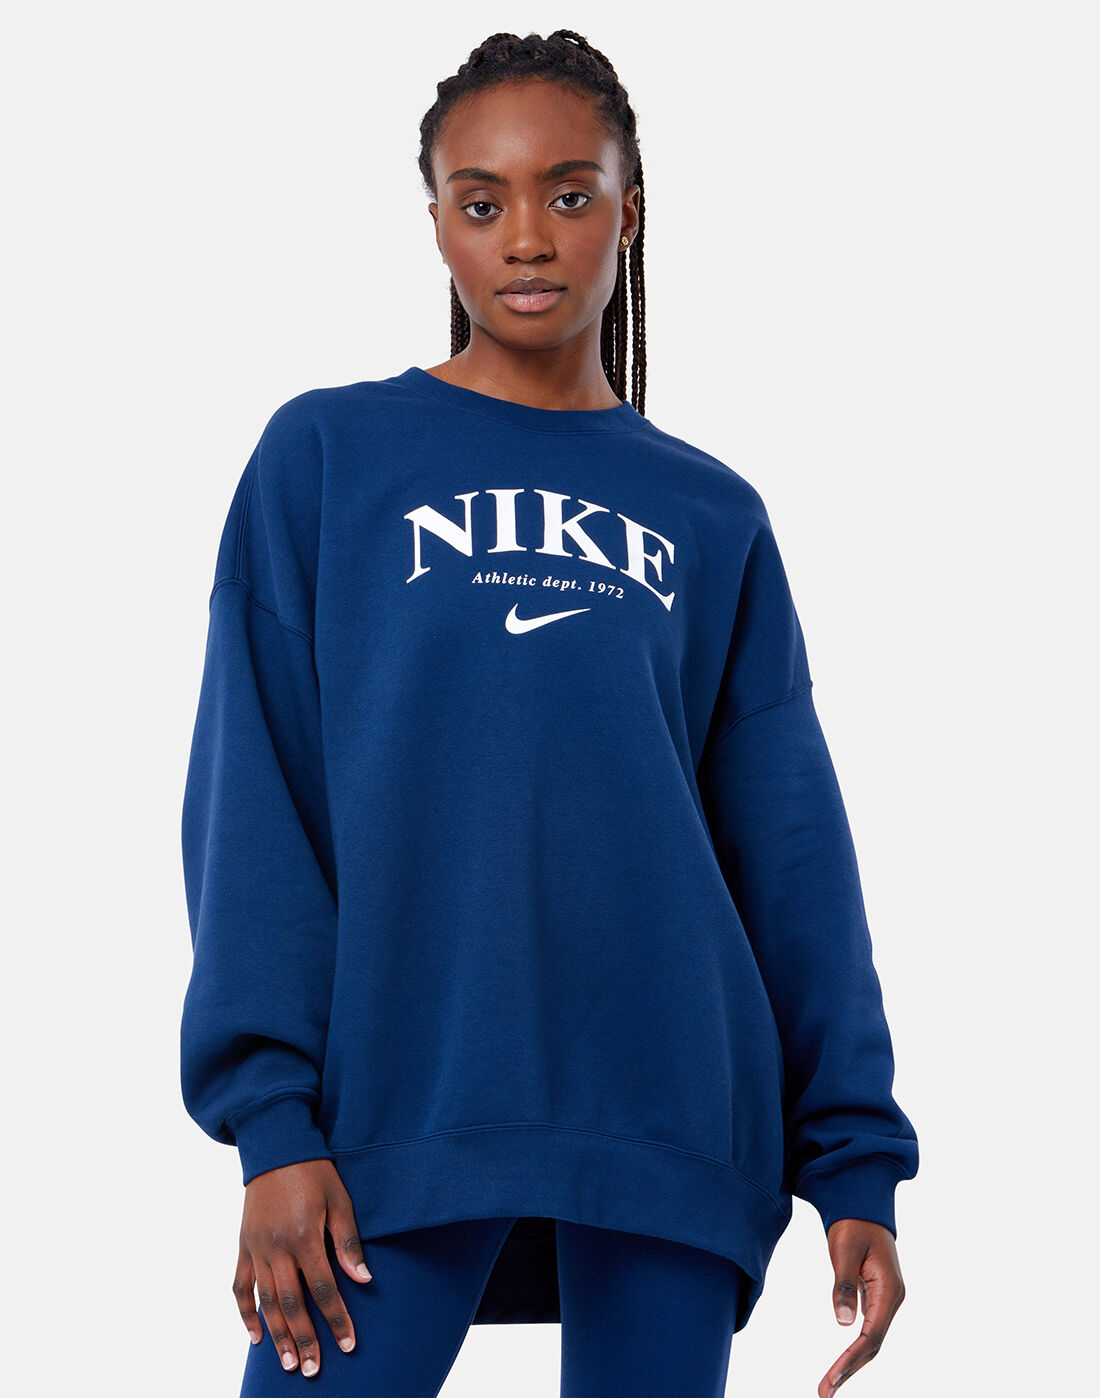 nike women's fleece sweatshirts